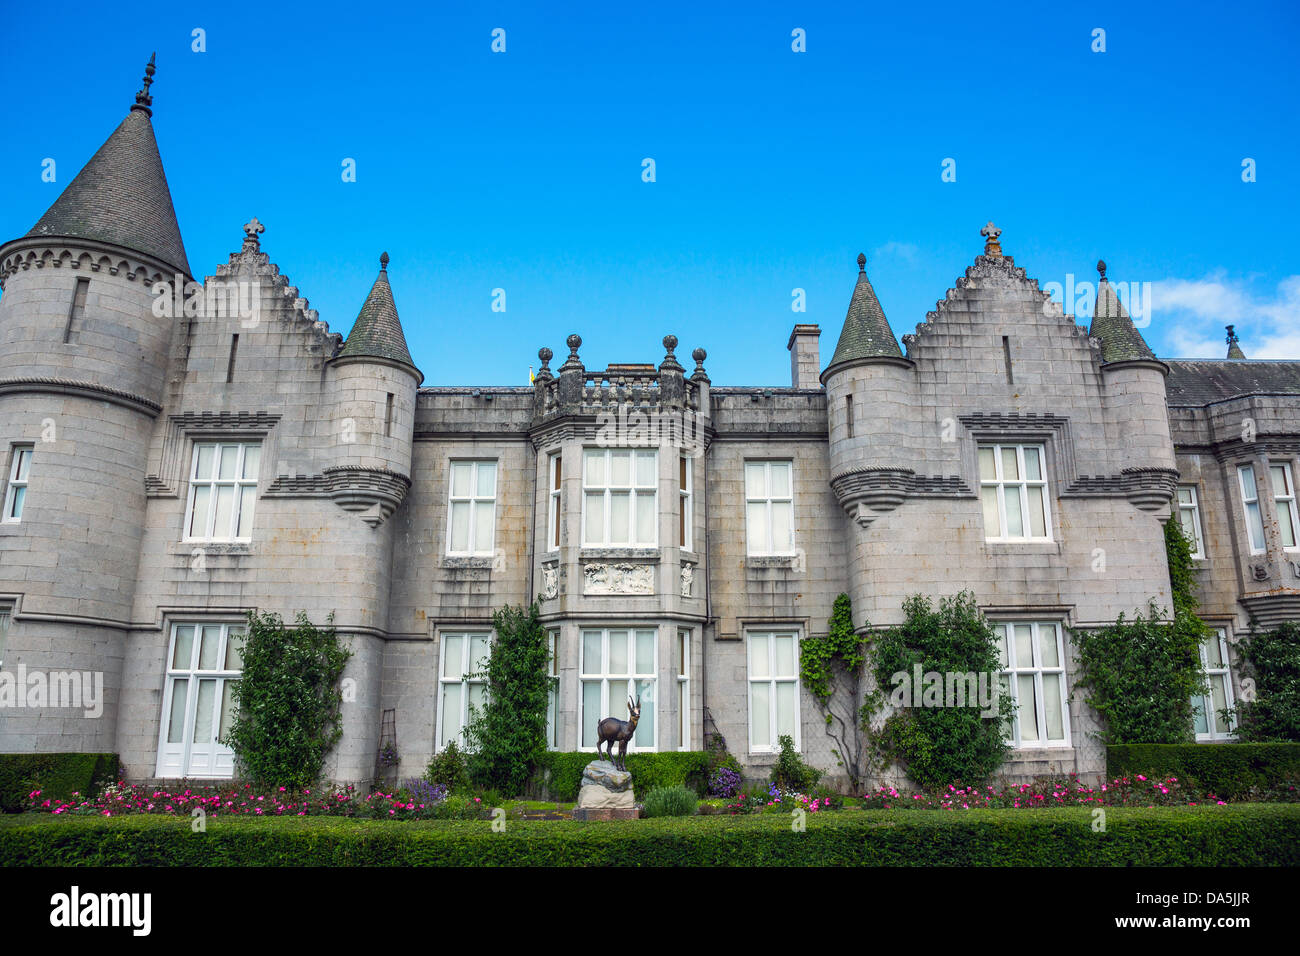 Europa Gran Bretaña, Escocia, aberdeenshire, el castillo de Balmoral, residencia de verano de la familia real británica. Foto de stock